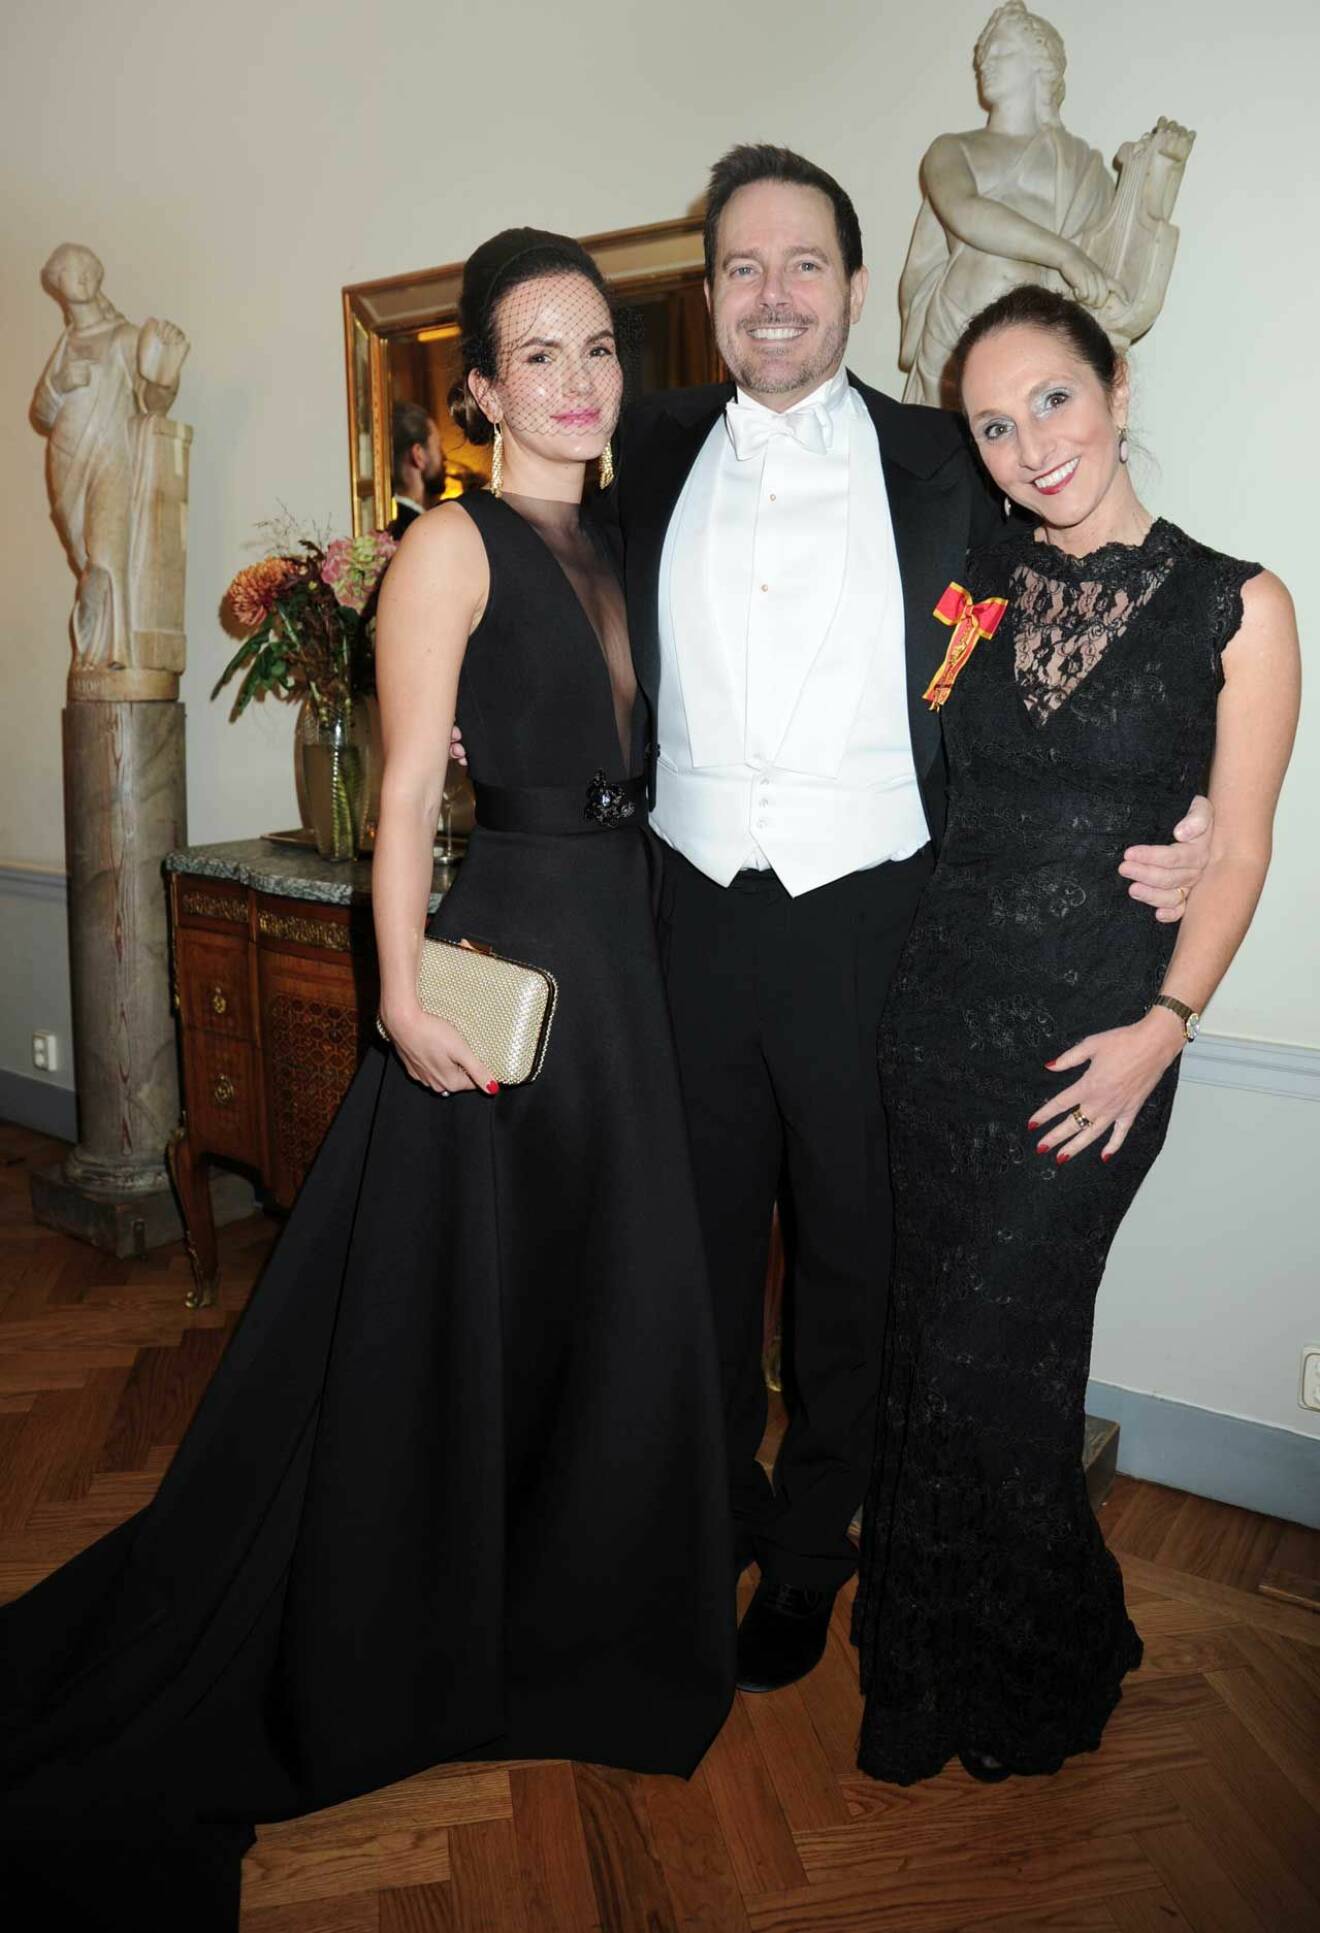 Kvällens stiligaste trio! Ivana Spotakova, som kom från Zürich, tillsammans med Johan Schreiber och Bettina Buffa.